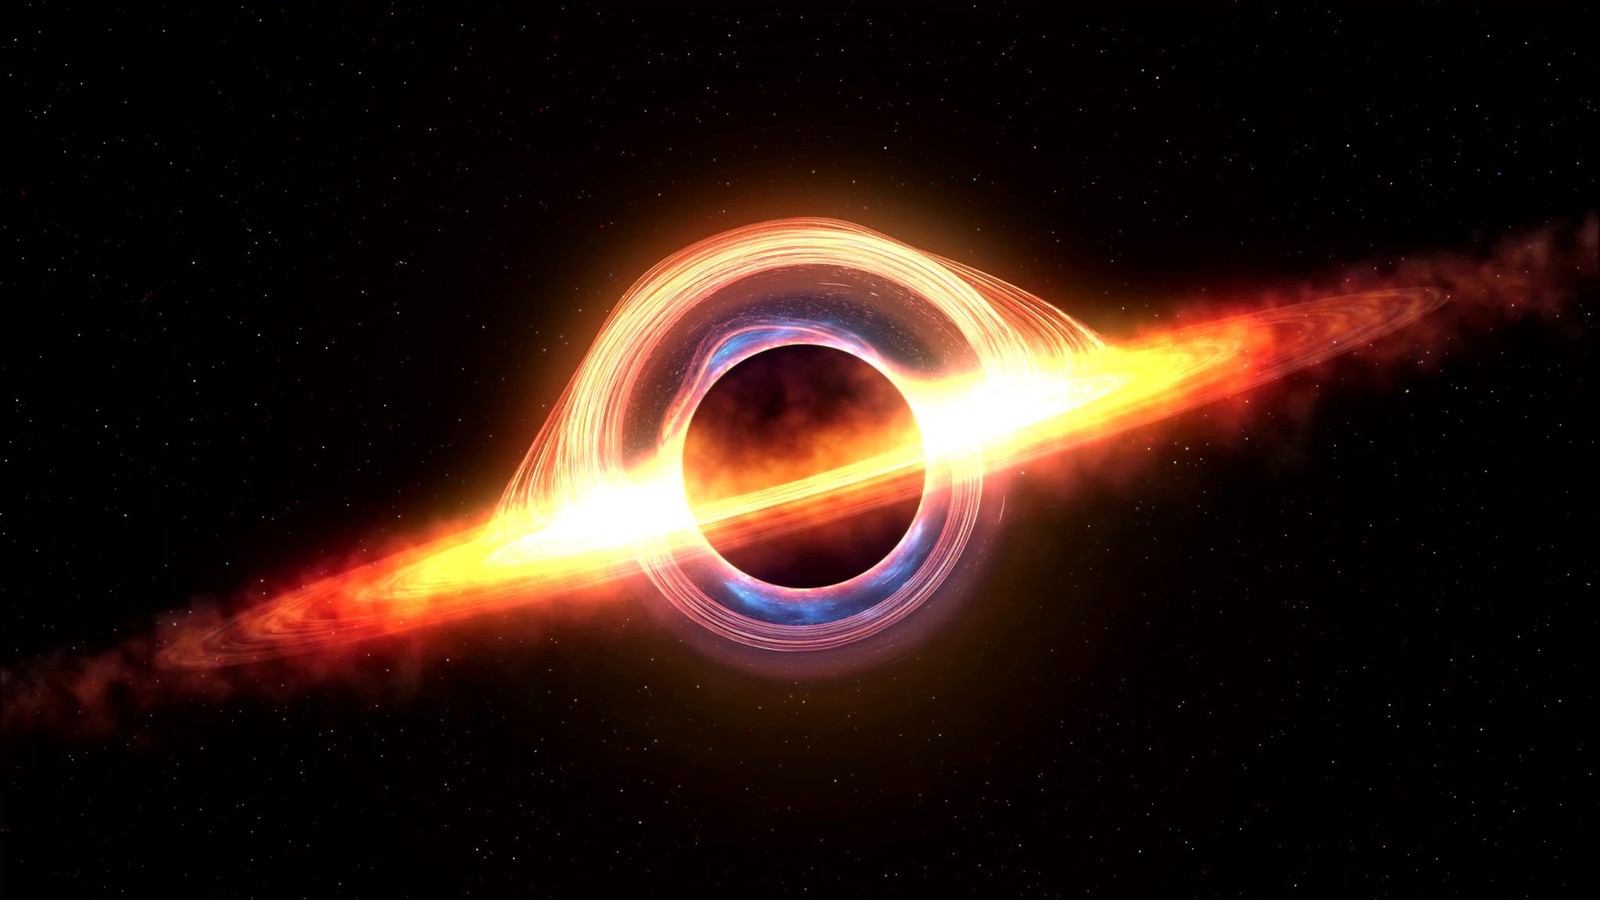 Czarna dziura uważnie obserwuje swoje otoczenie. Czy uda się zajrzeć do jej środka?